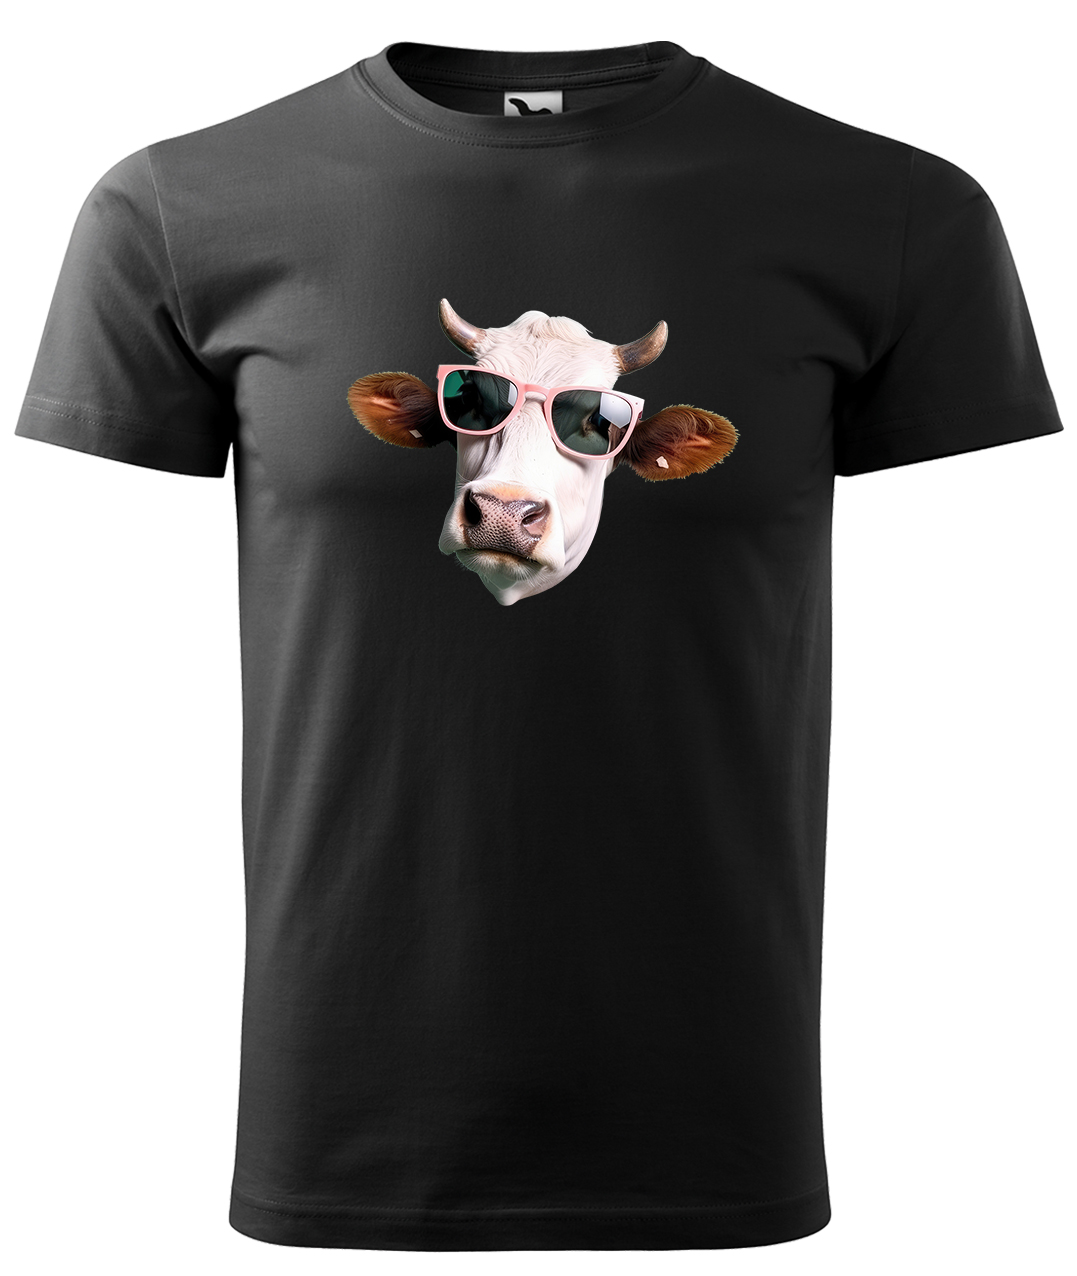 Dětské tričko s krávou - Kráva v brýlích Velikost: 10 let / 146 cm, Barva: Černá (01), Délka rukávu: Krátký rukáv